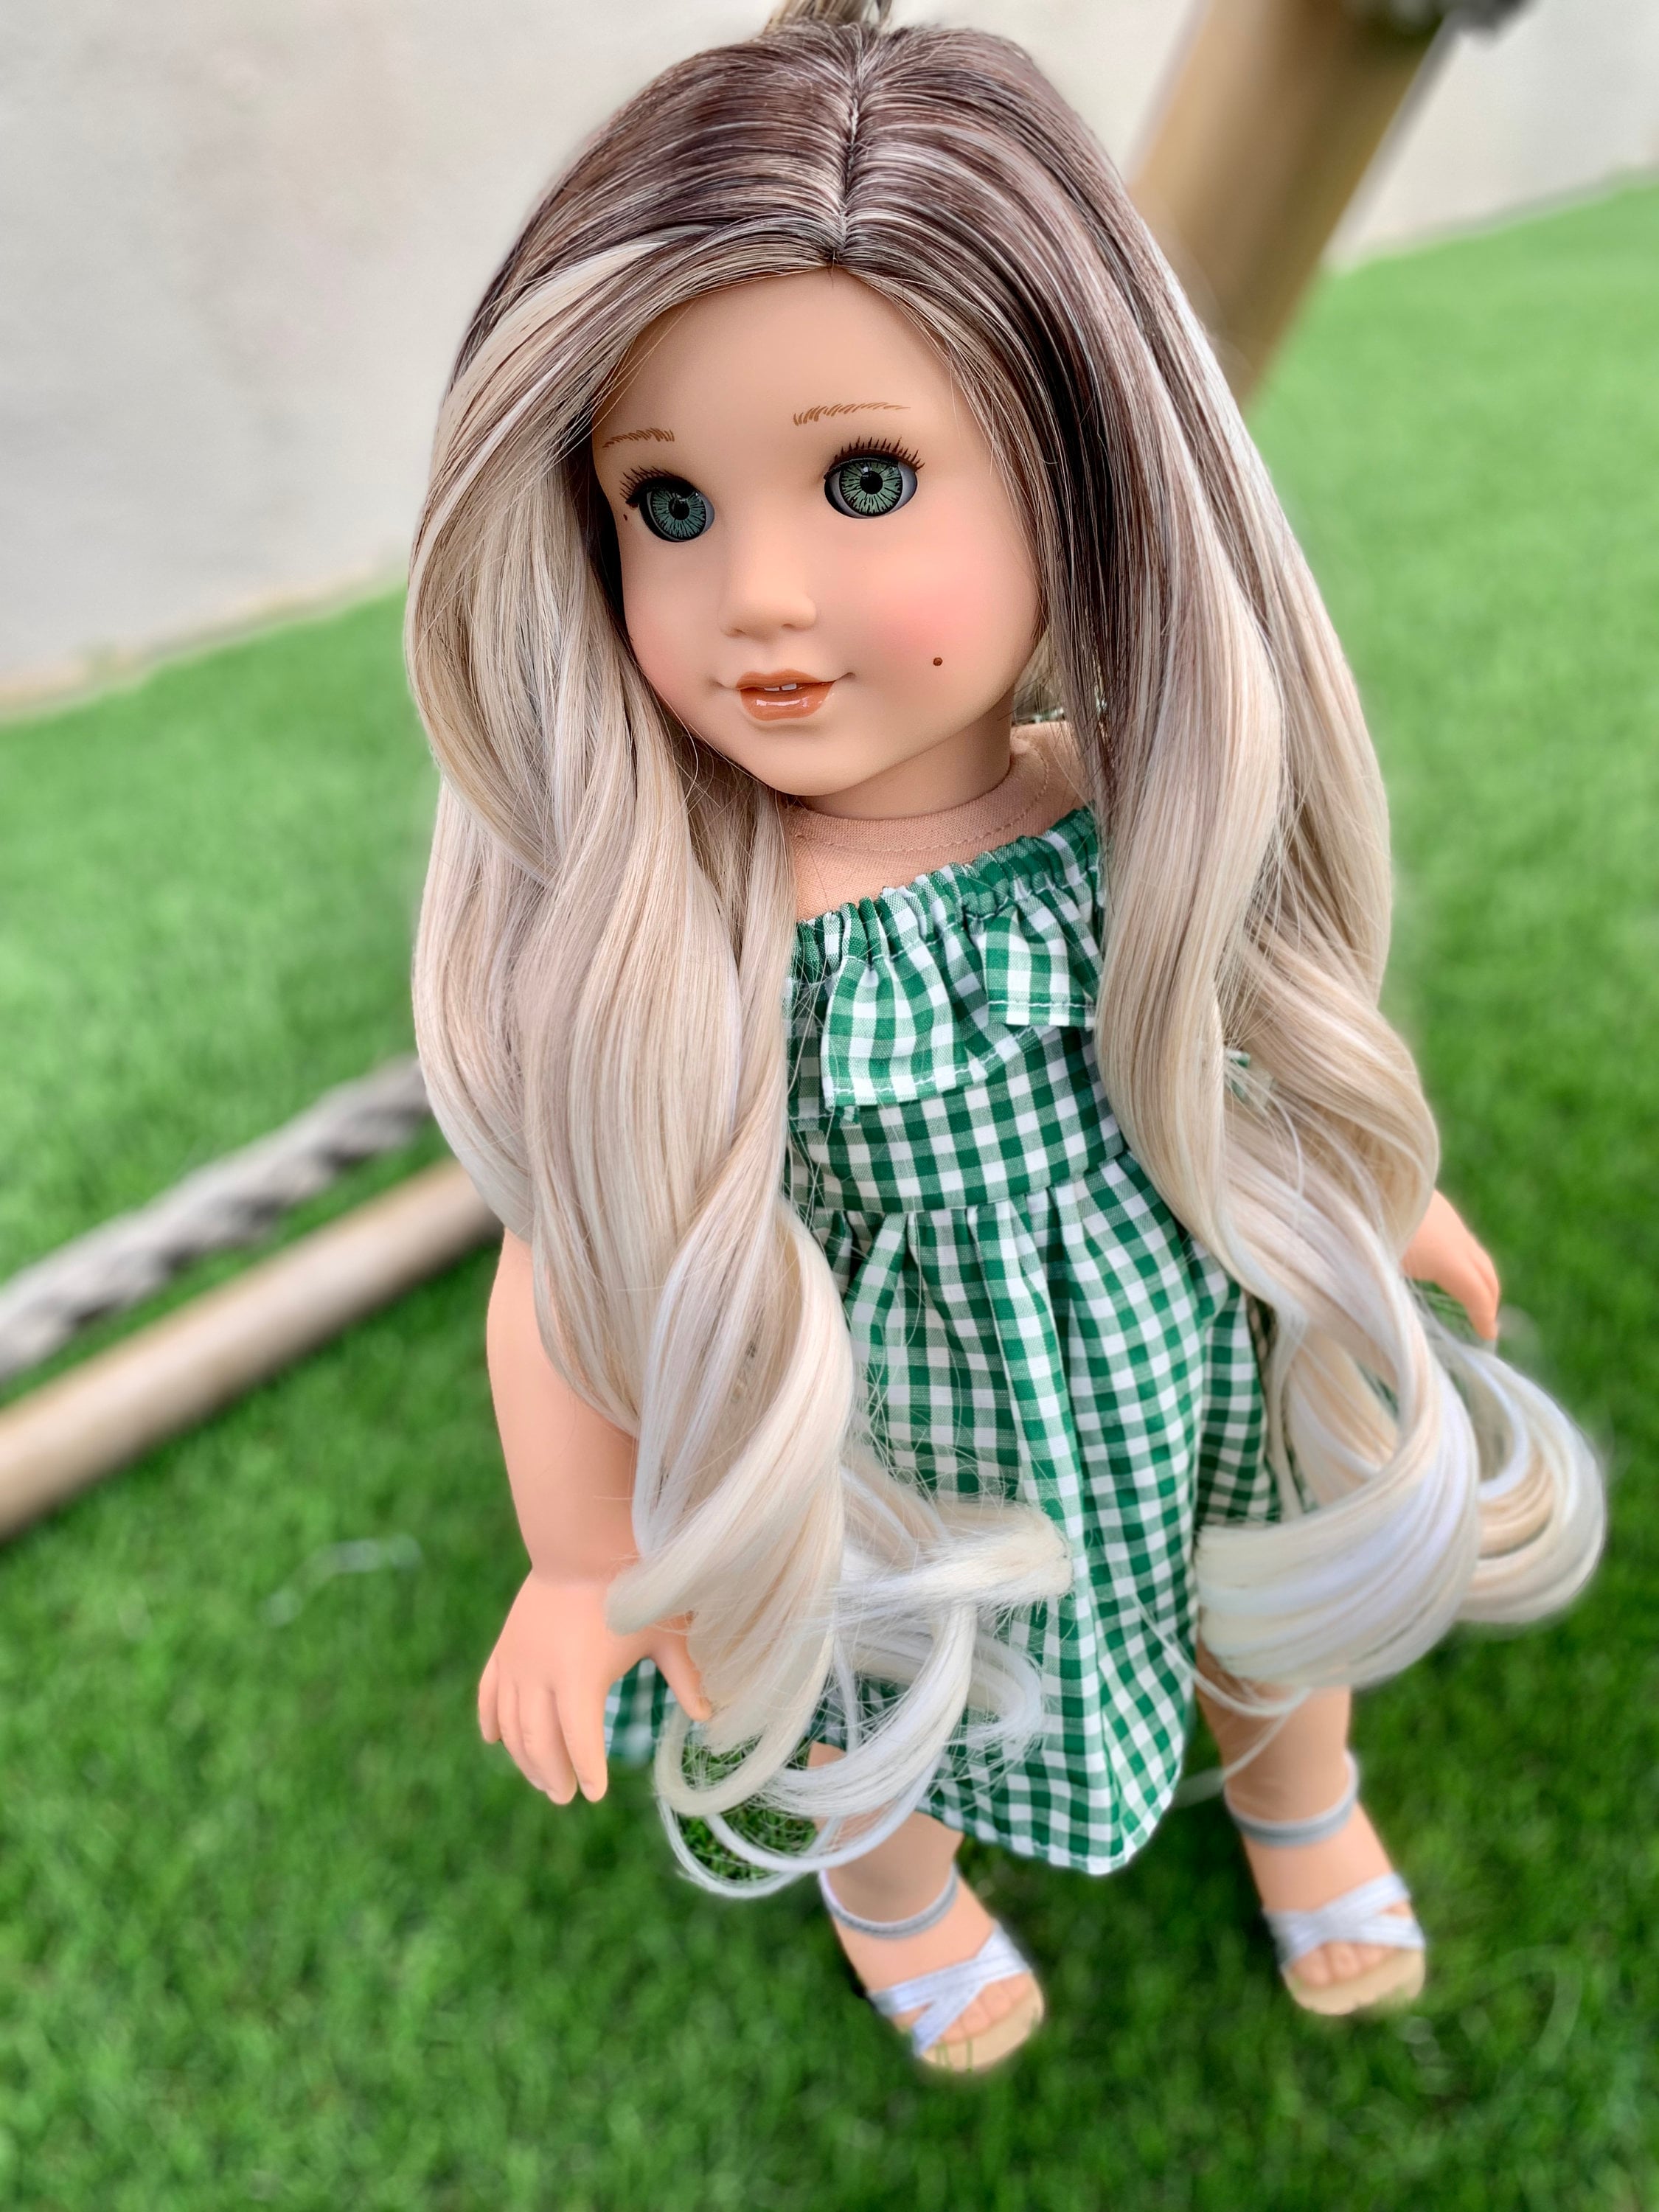 Custom doll wig for 18" American Girl Dolls - Heat Safe - Tangle Resistant - fits 10-11" head size of 18" dolls OG Blythe BJD Gotz Ombre